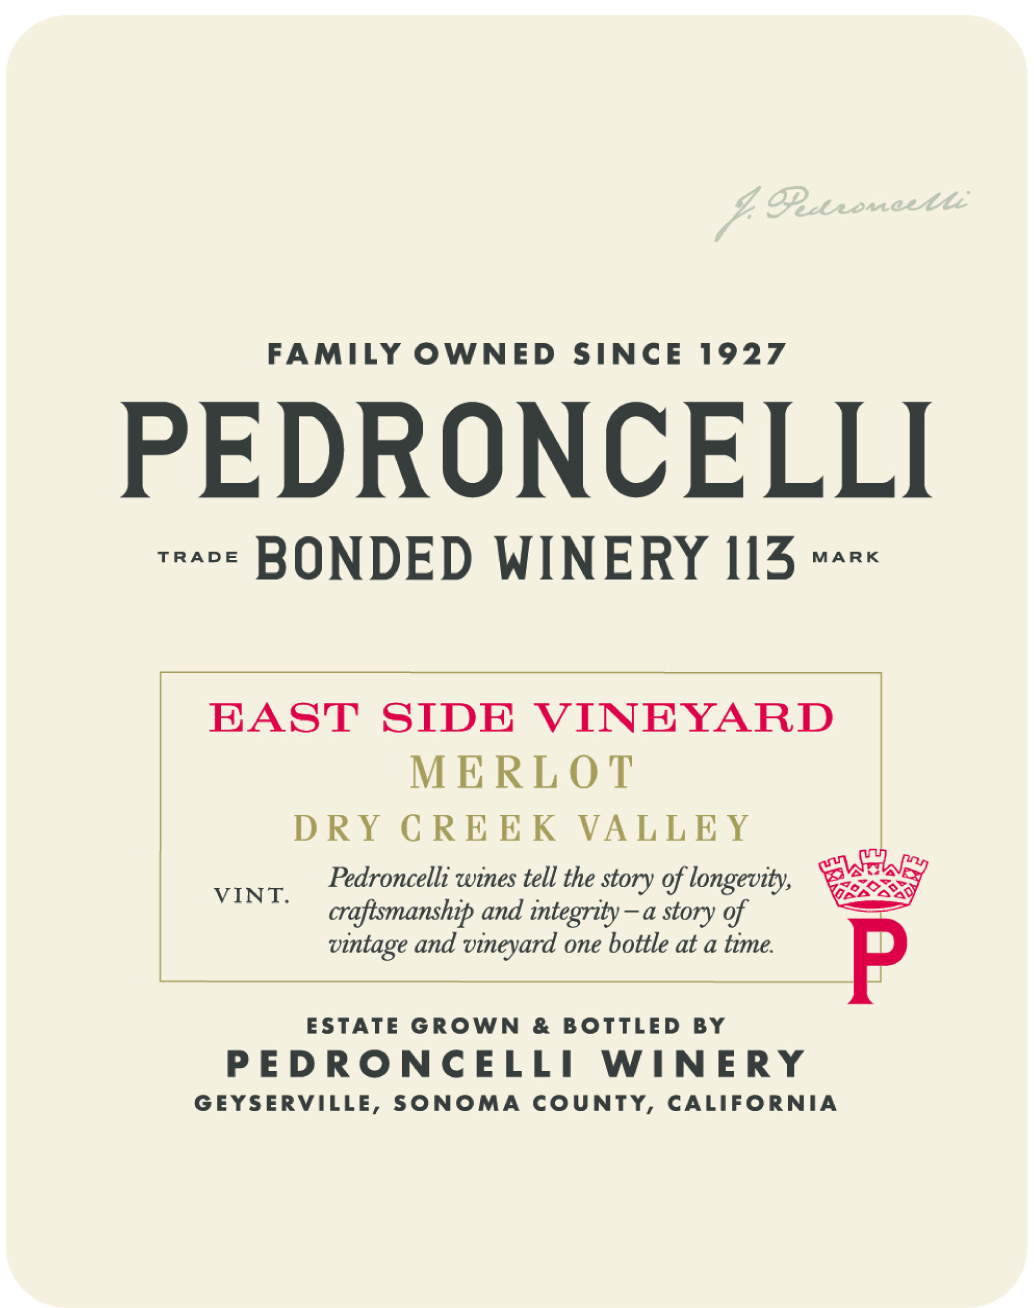 Pedroncelli - Merlot - East Side Vineyards label